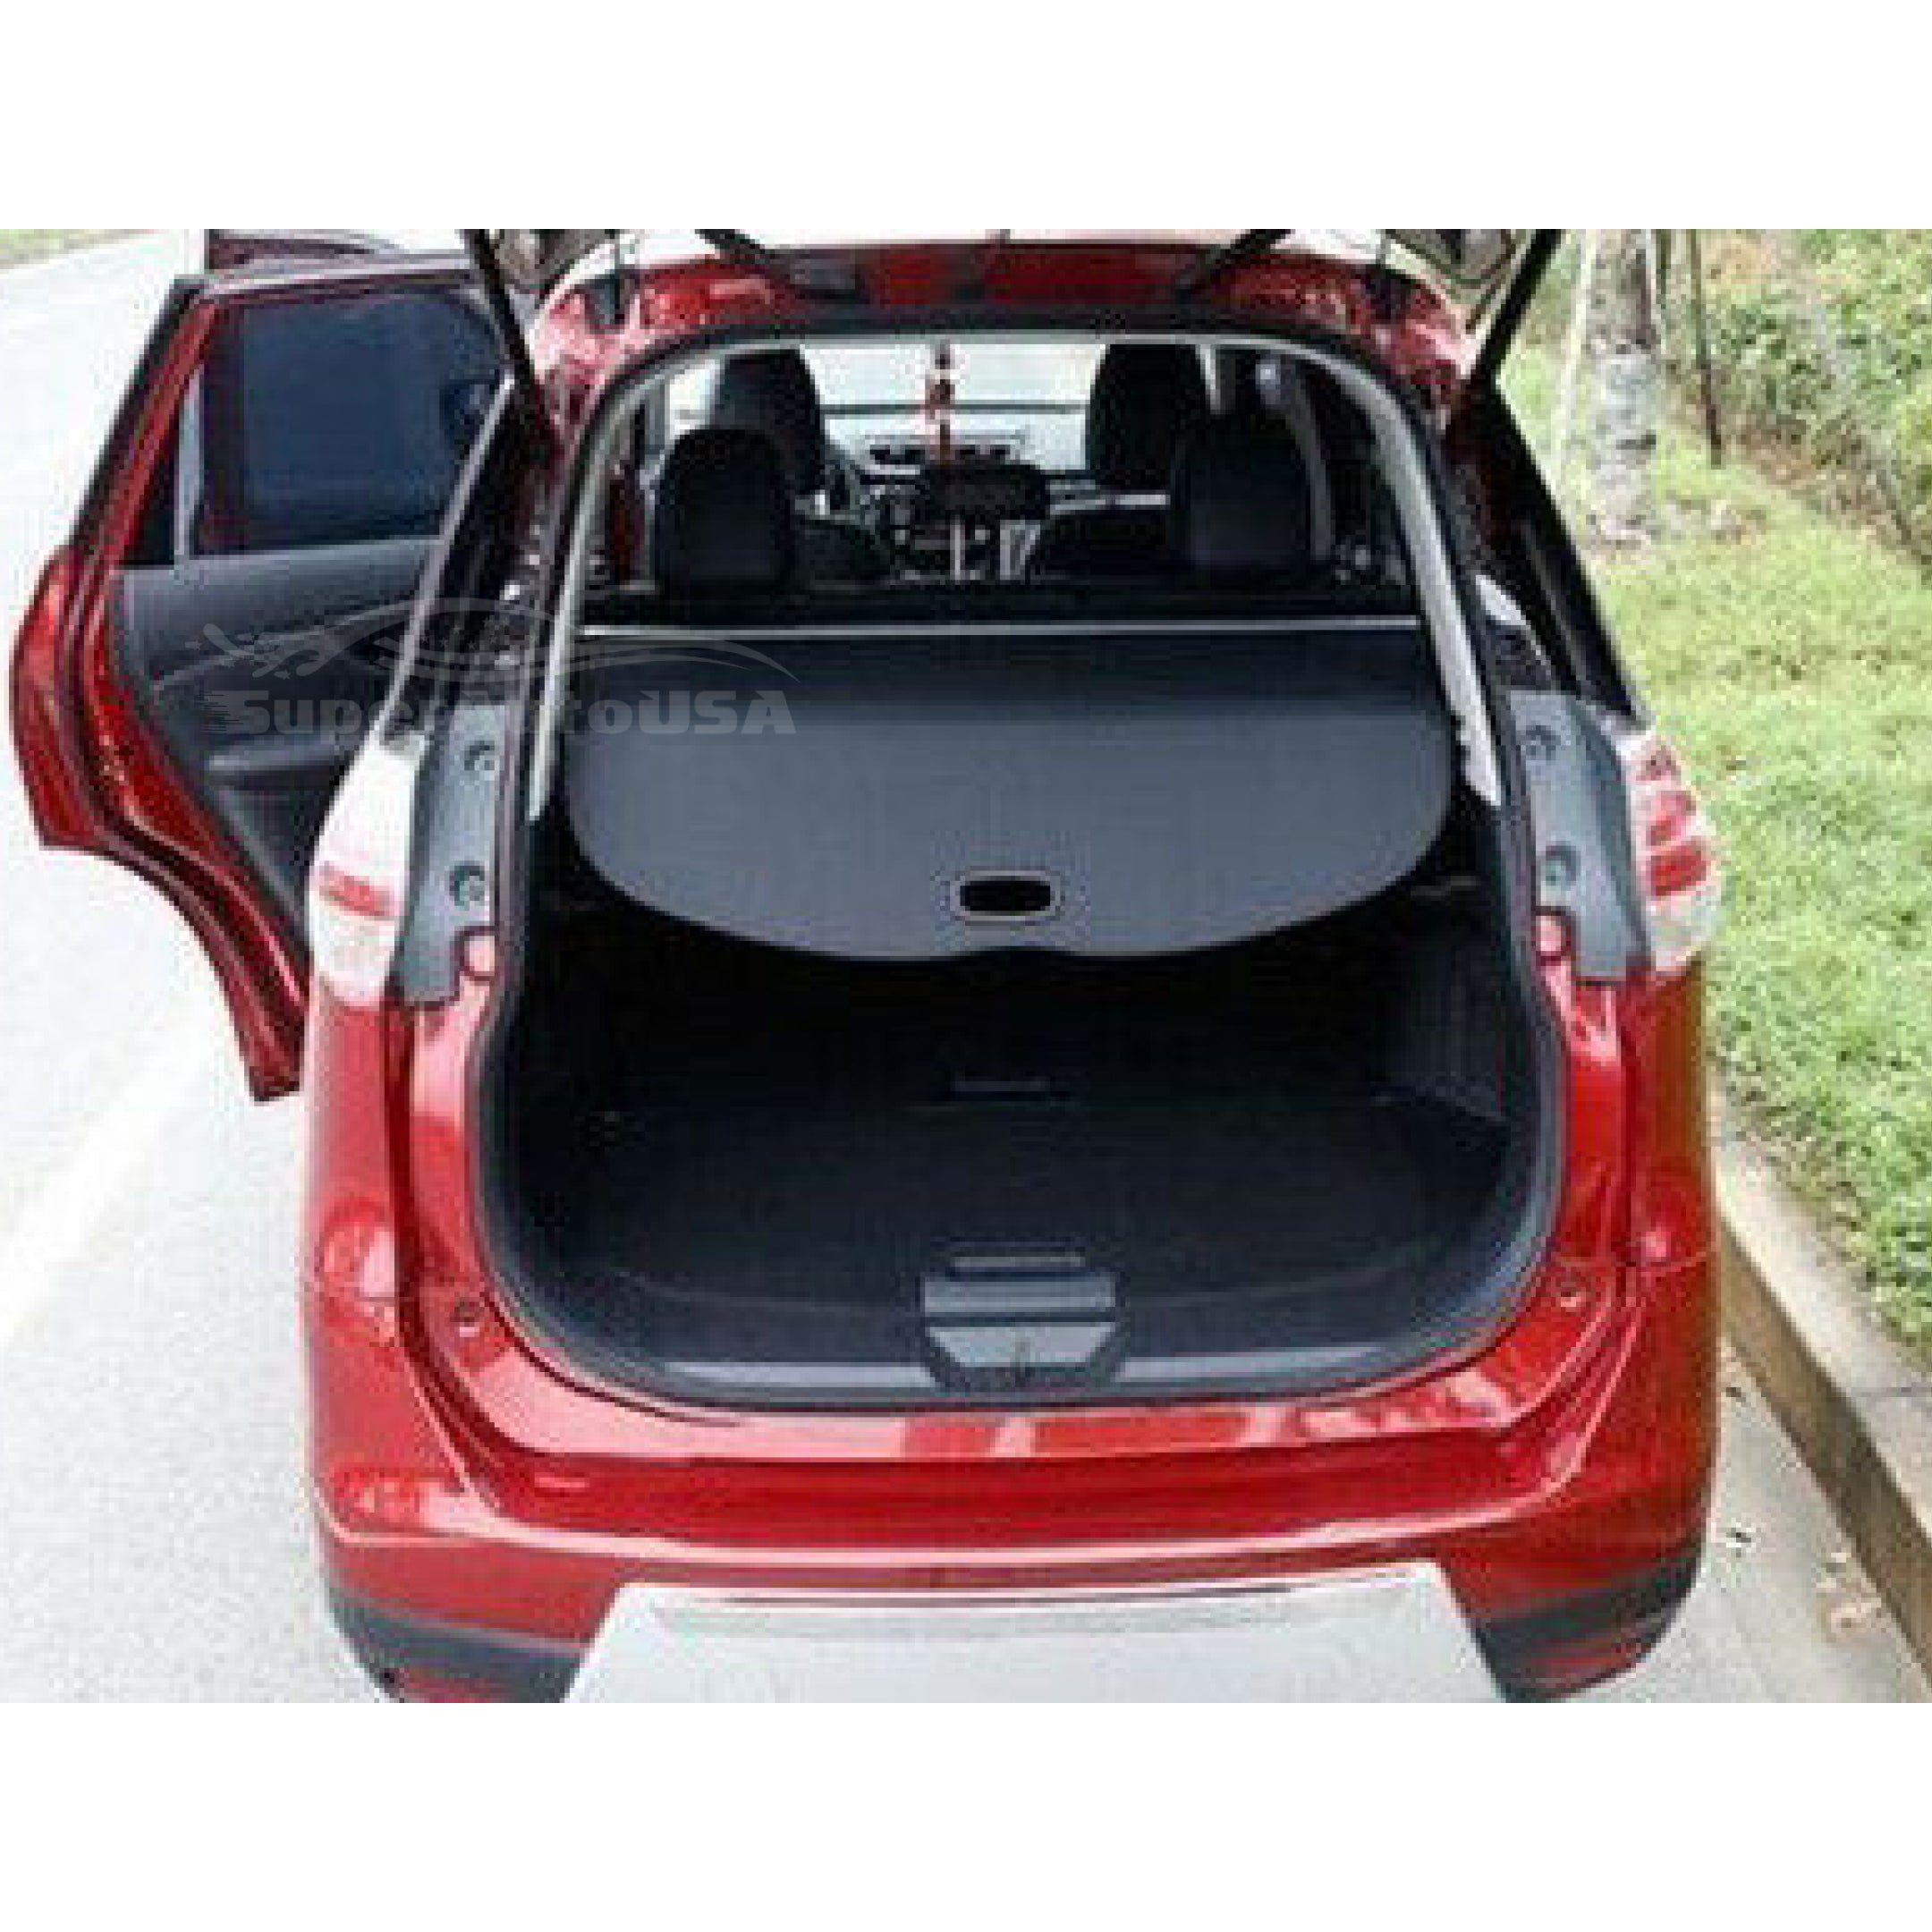 Se adapta a la cubierta de carga Tonneau retráctil del maletero trasero del equipaje Subaru XV 2019-2021 (negro)-2